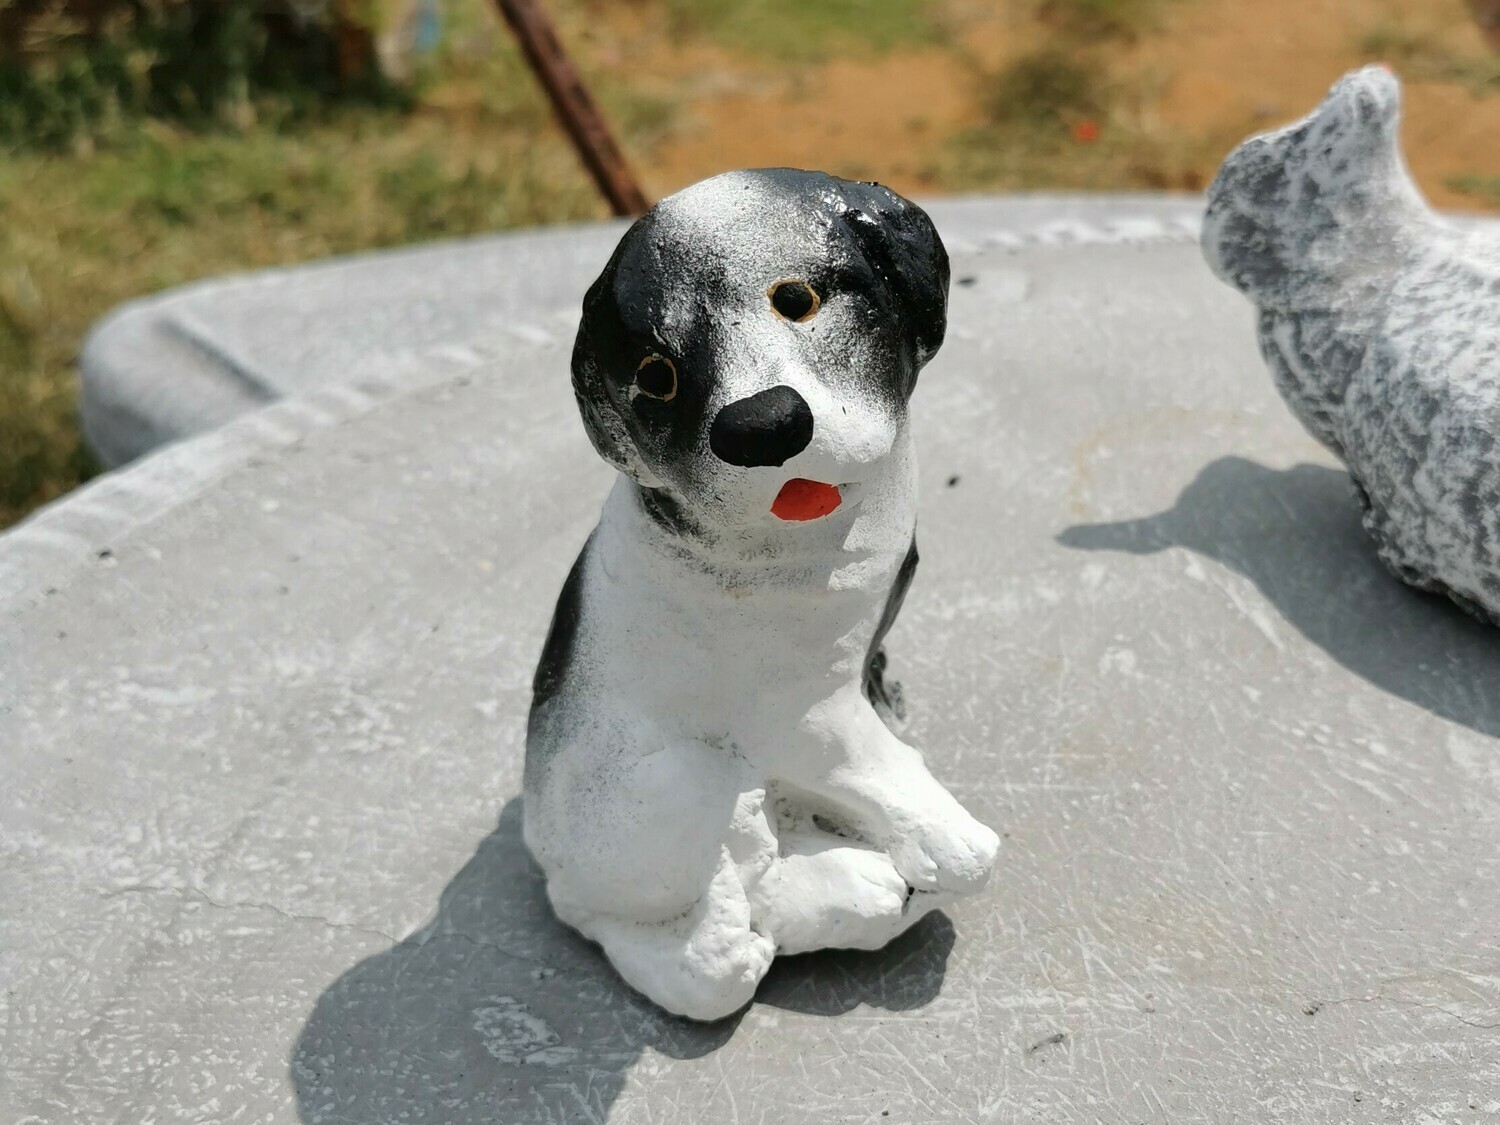 Cute doggy statue